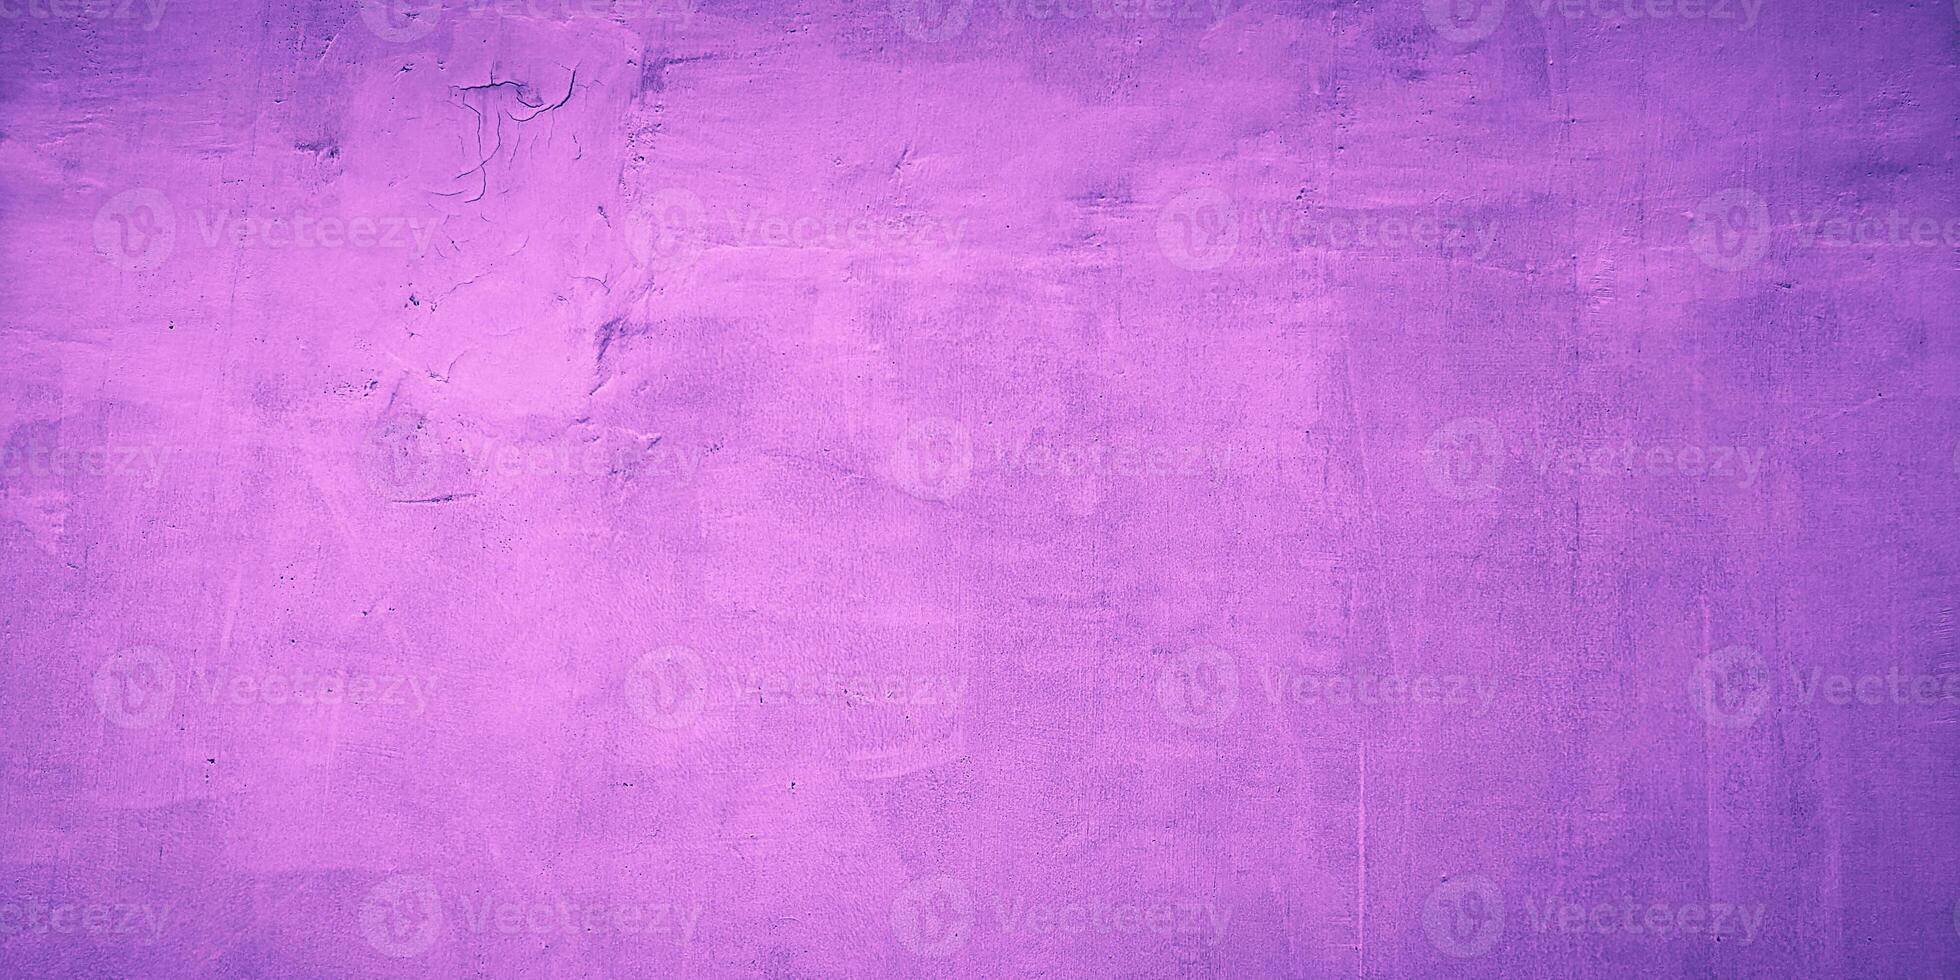 textur abstrakt lila vägg bakgrund foto